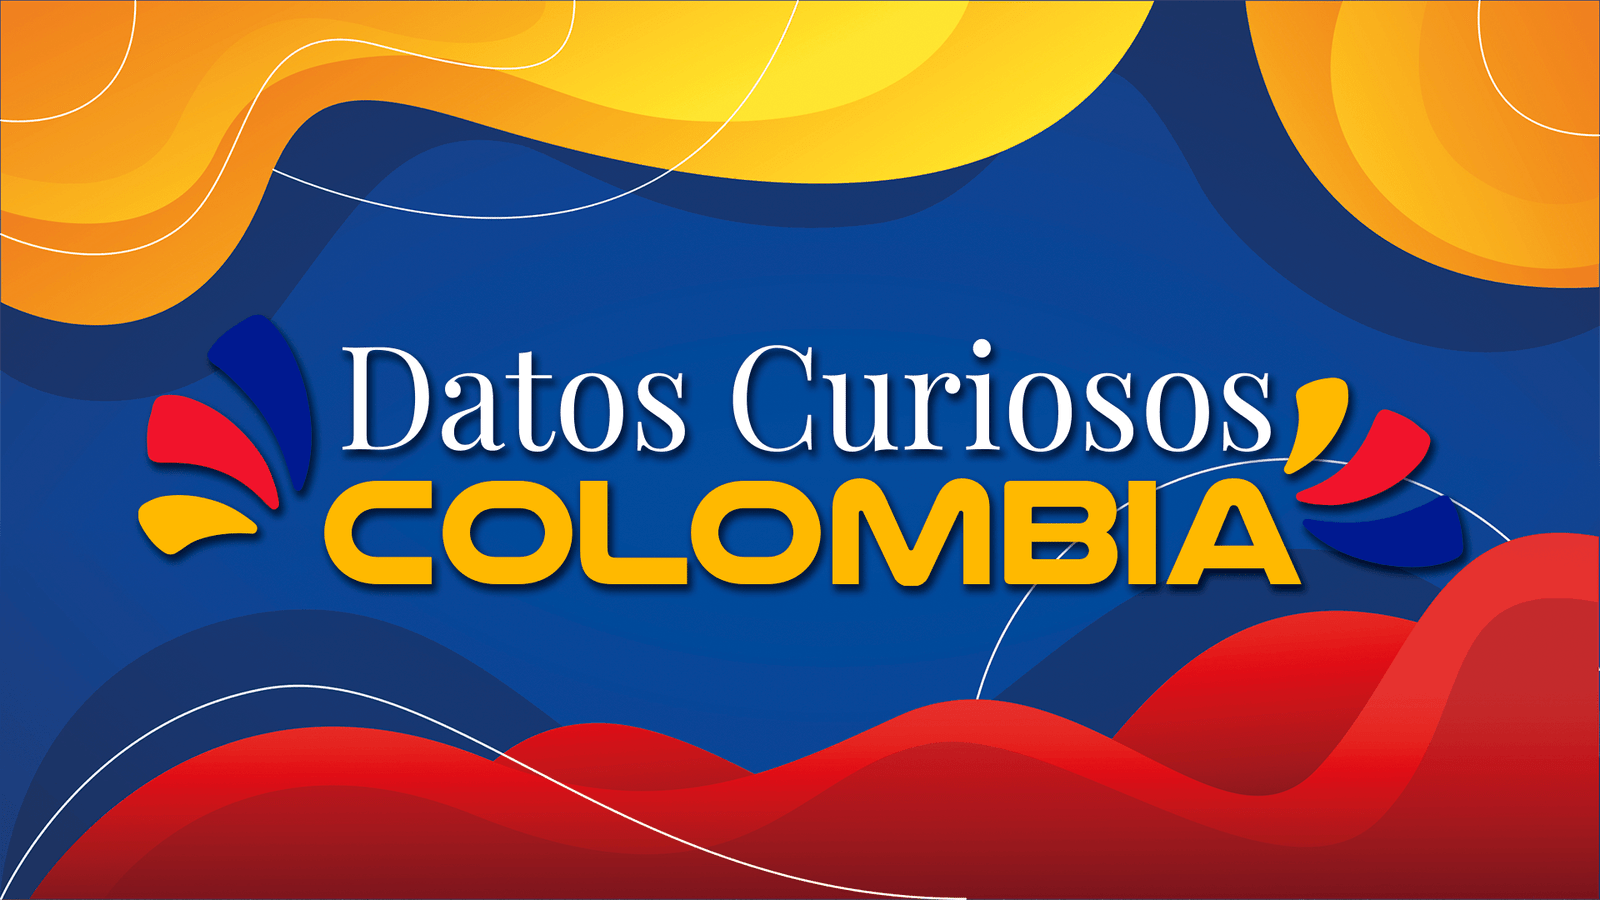 Datos curiosos de Colombia